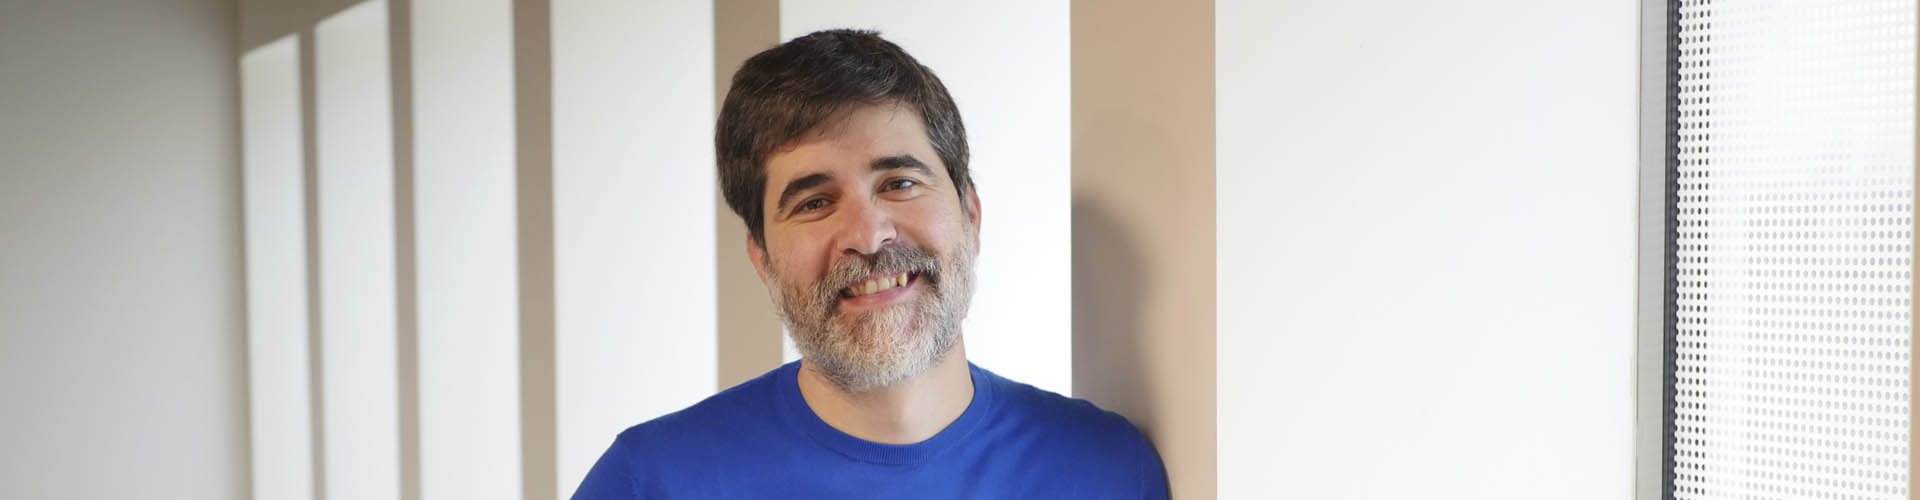 Carlos Buenosvinos, CEO de Seat:Code: «En los momentos convulsos, las startups tienen un montón de oportunidades»